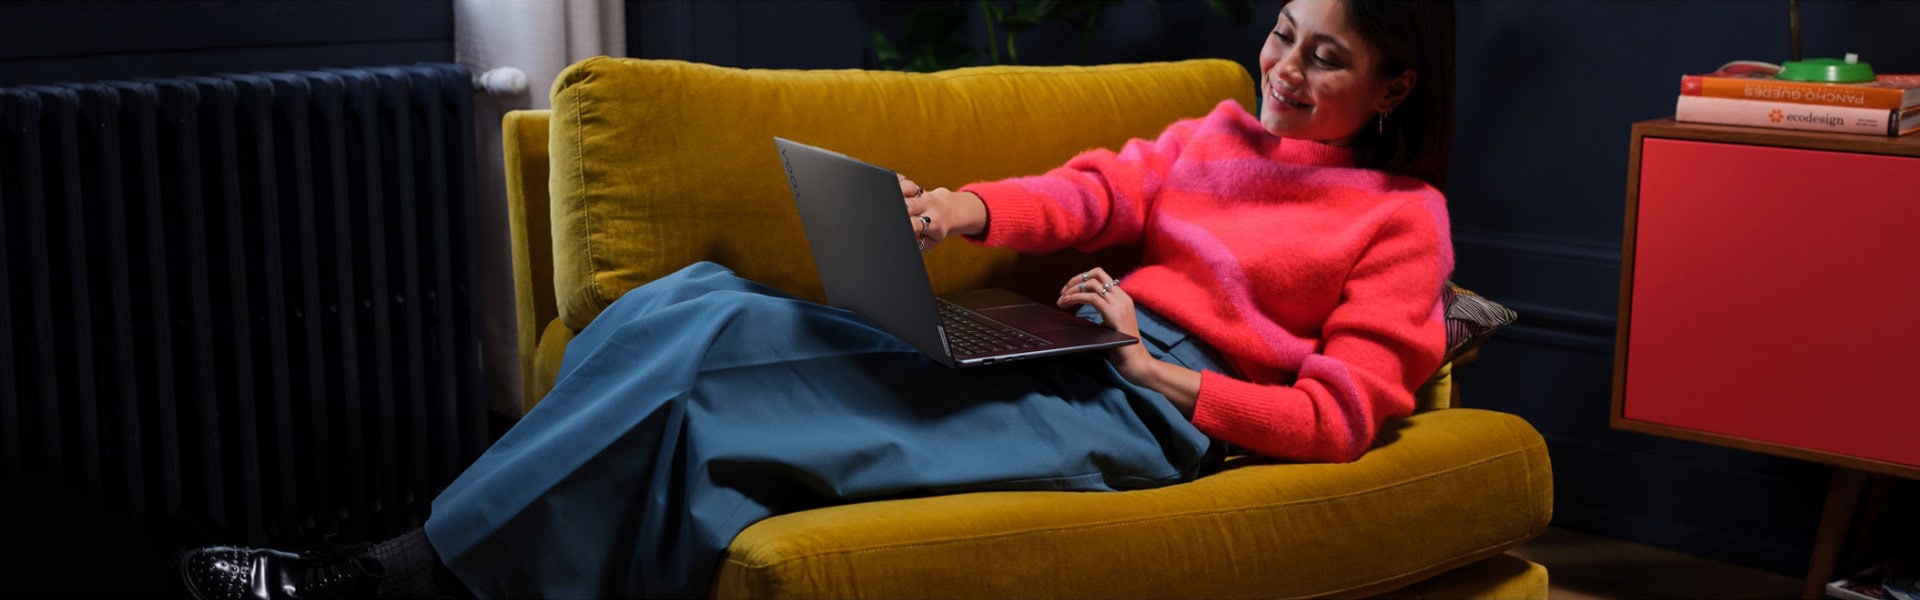 Γυναίκα καθισμένη σε μια μεγάλη καρέκλα έχοντας το laptop της Lenovo Yoga πάνω στα πόδια της